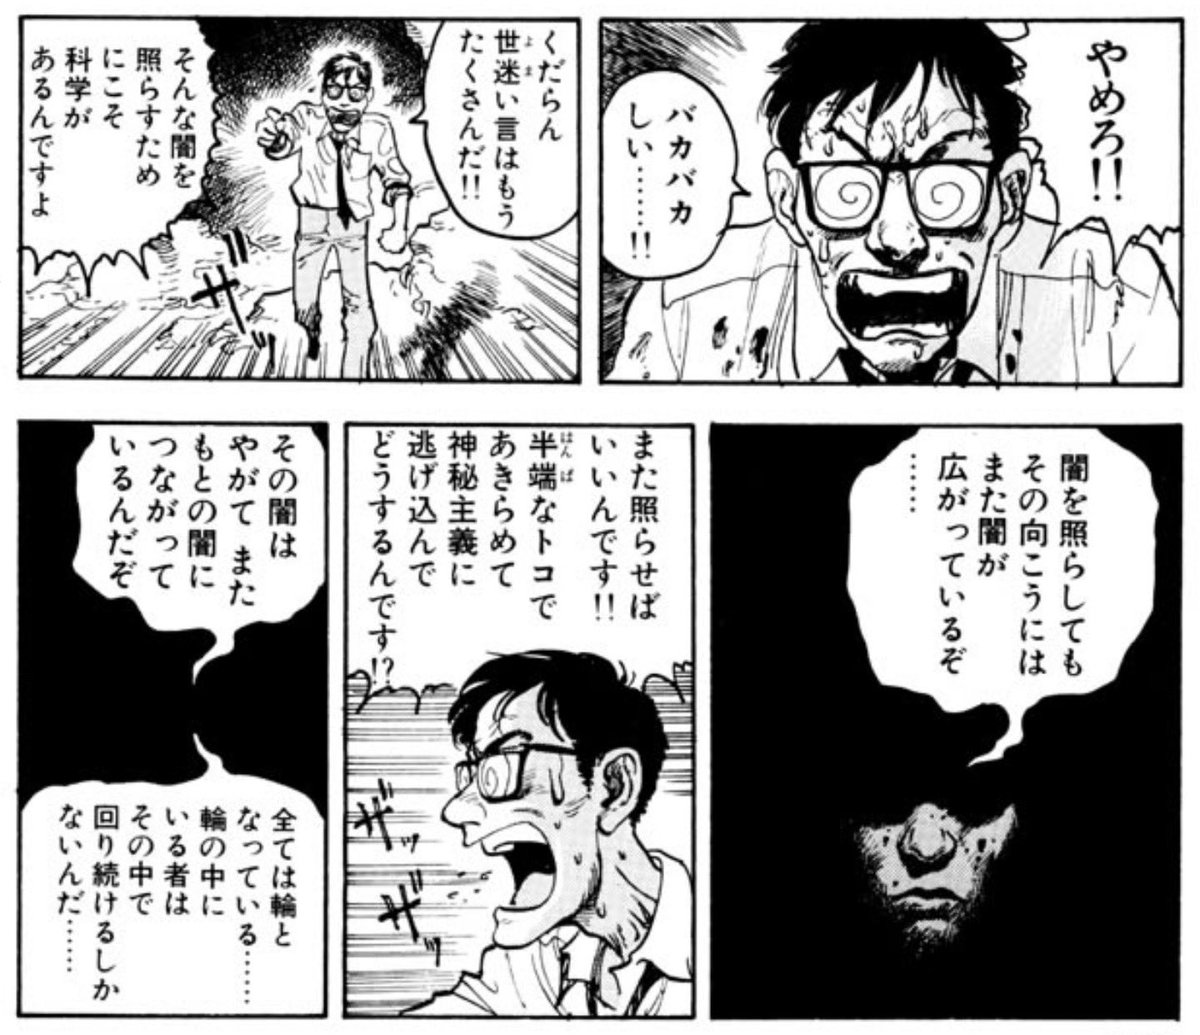 Toshikaz Toshikaz55 さんの漫画 23作目 ツイコミ 仮